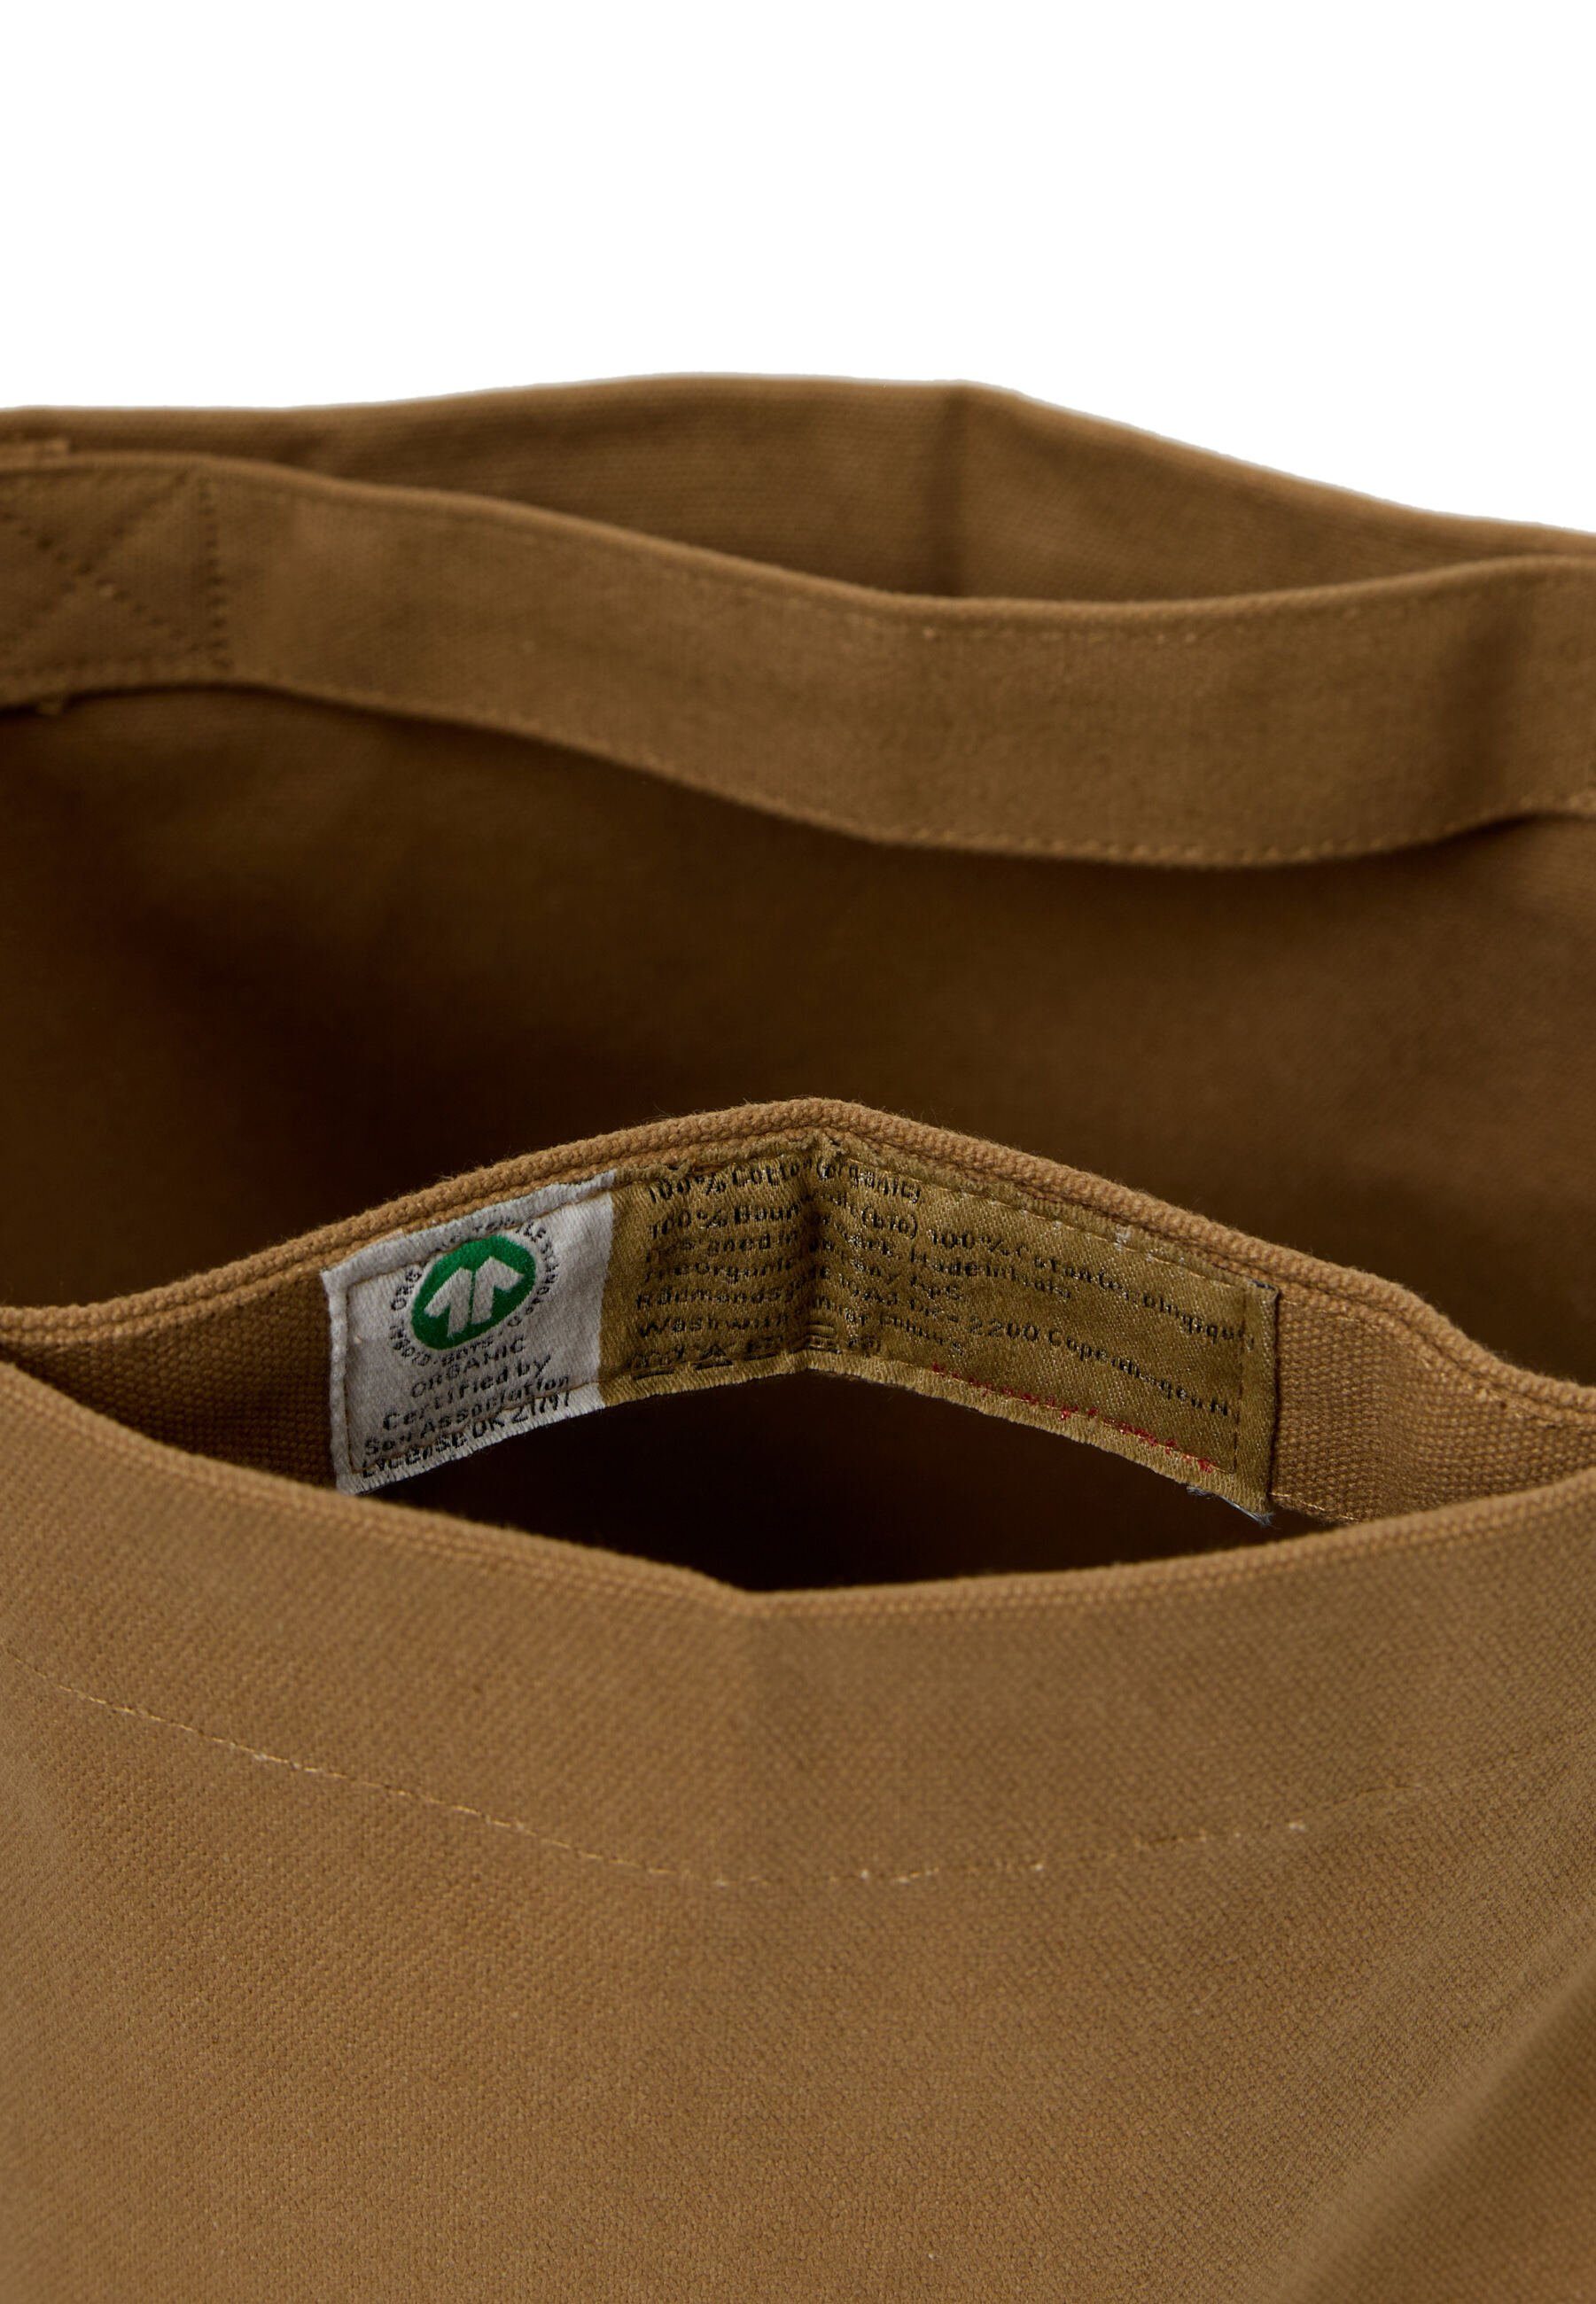 Meine Company Khaki GOTS The Organic zertifizierte Organische Tasche, Beuteltasche Bio-Baumwolle